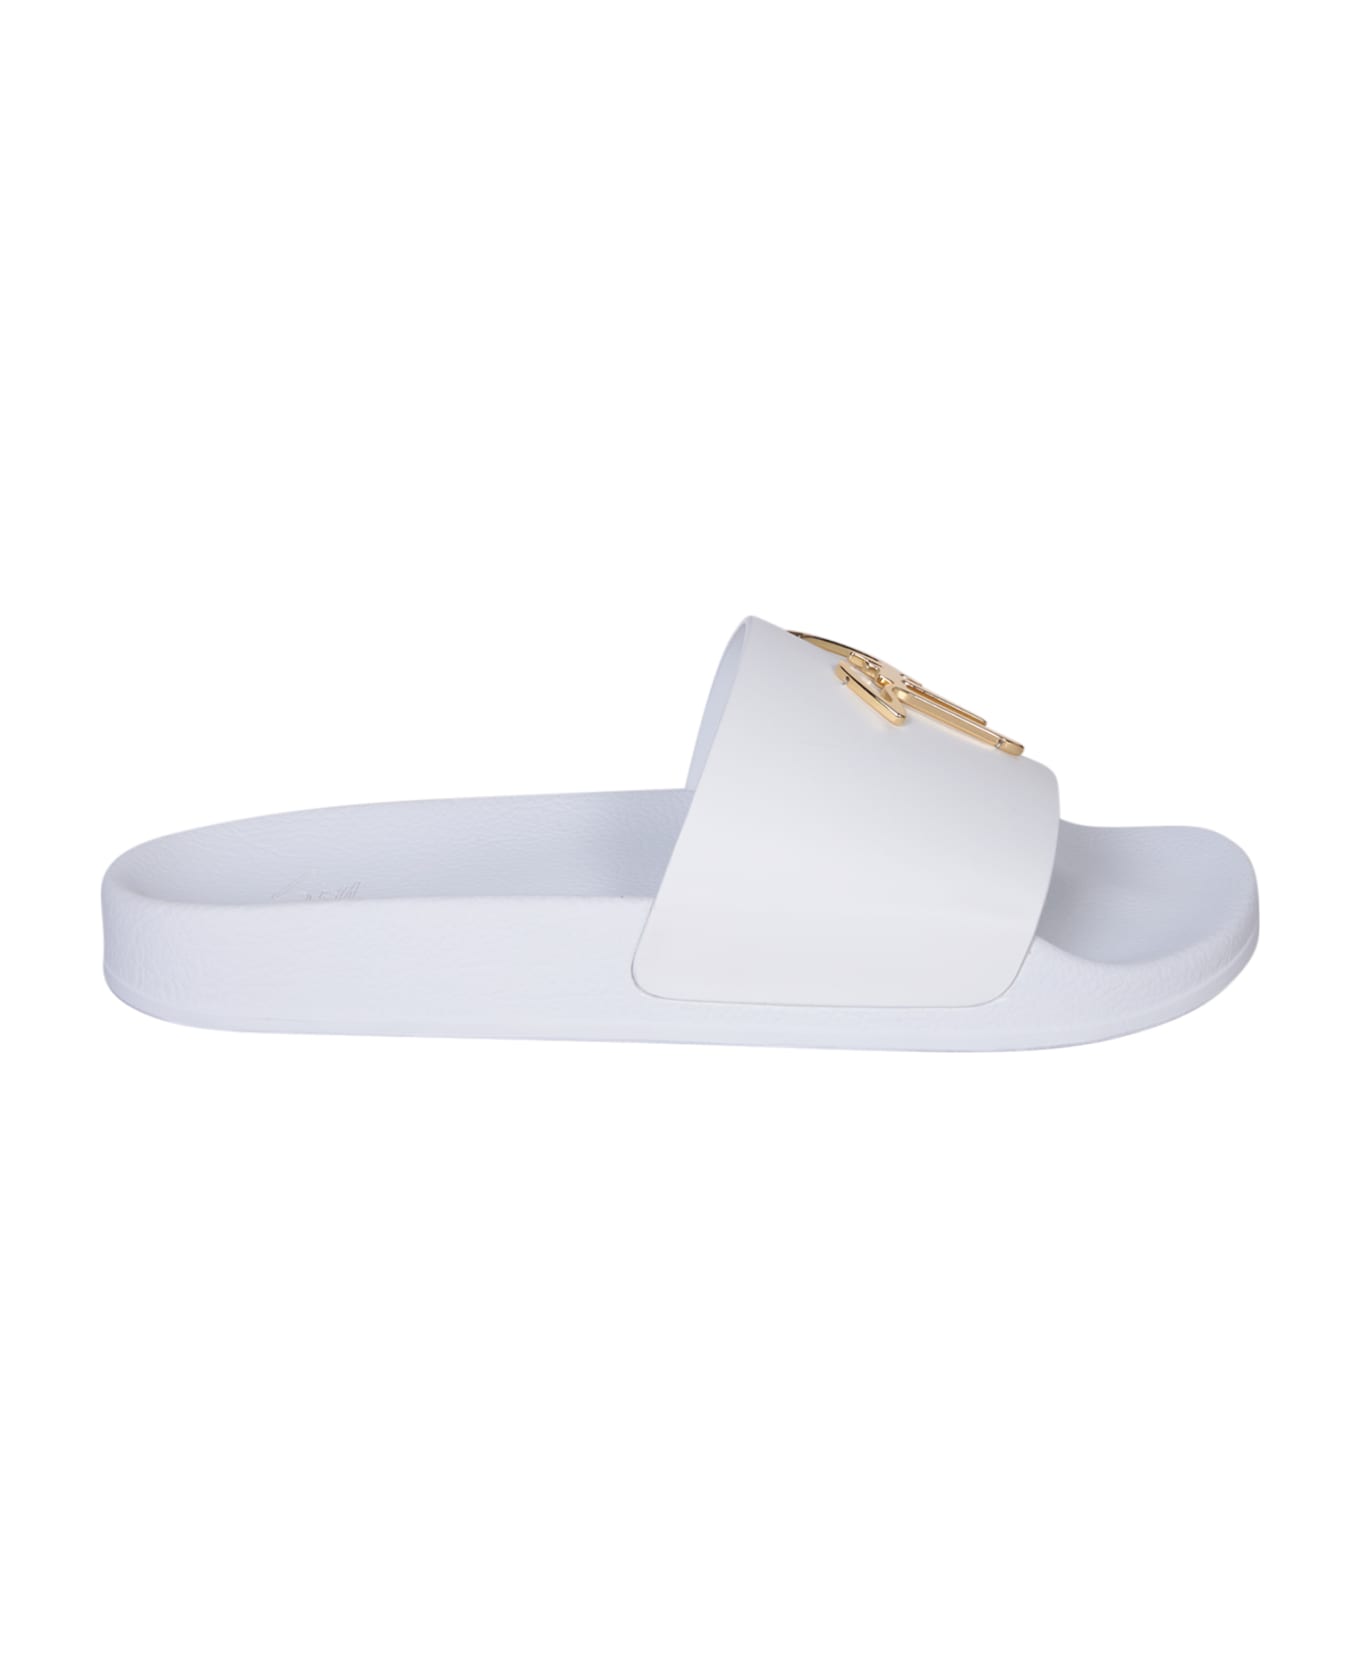 Giuseppe Zanotti Logo White/gold Slides - White